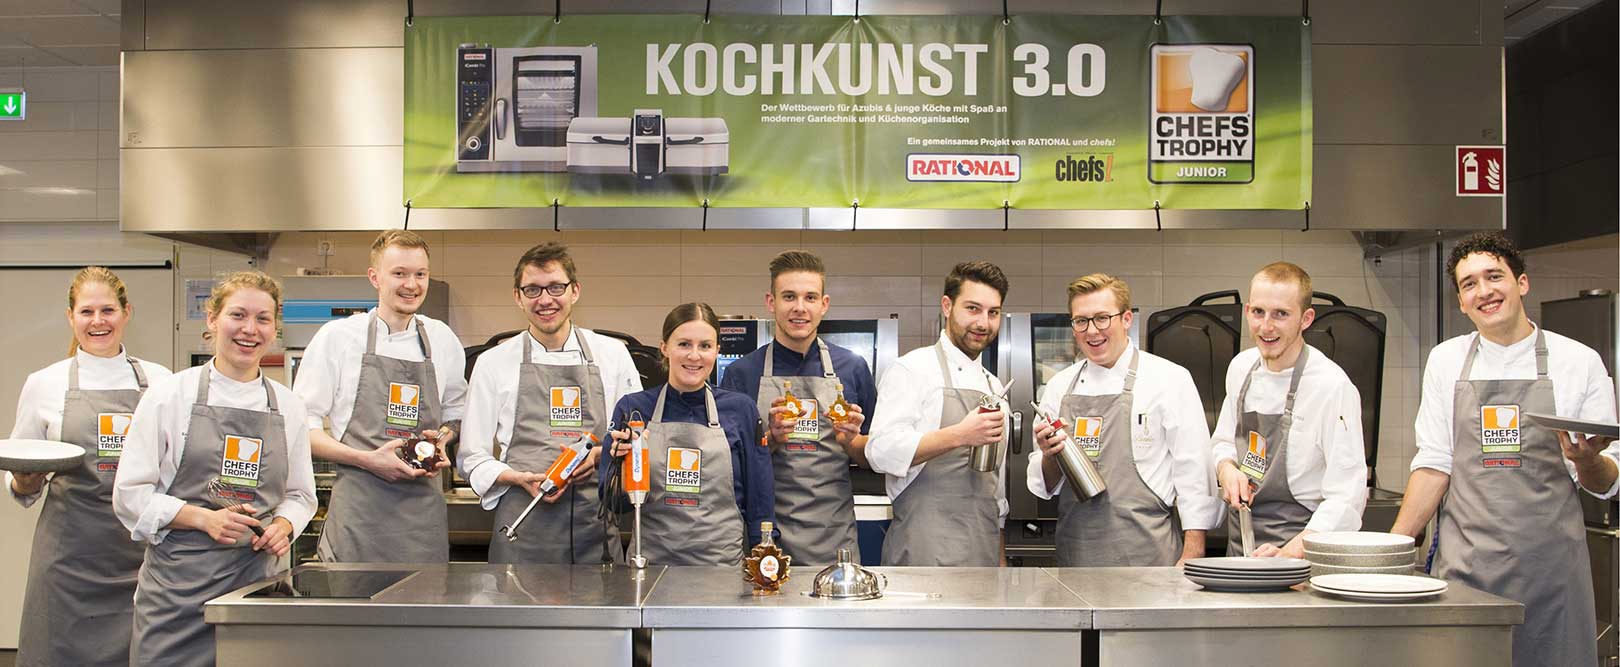 CHEFS TROPHY JUNIOR 2021: Die Finalisten am Start für Kochkunst 3.0